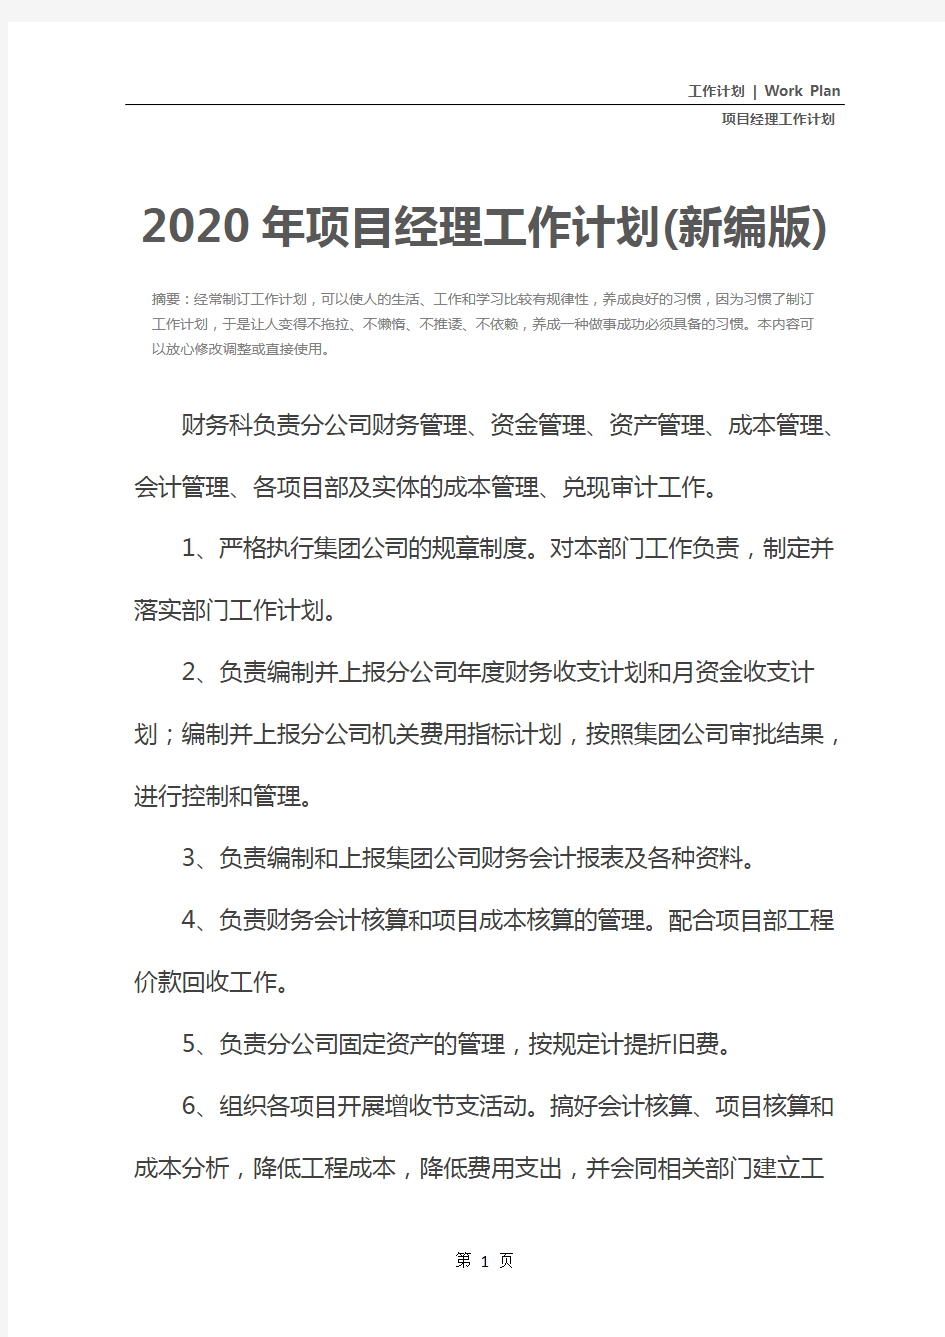 2020年项目经理工作计划(新编版)